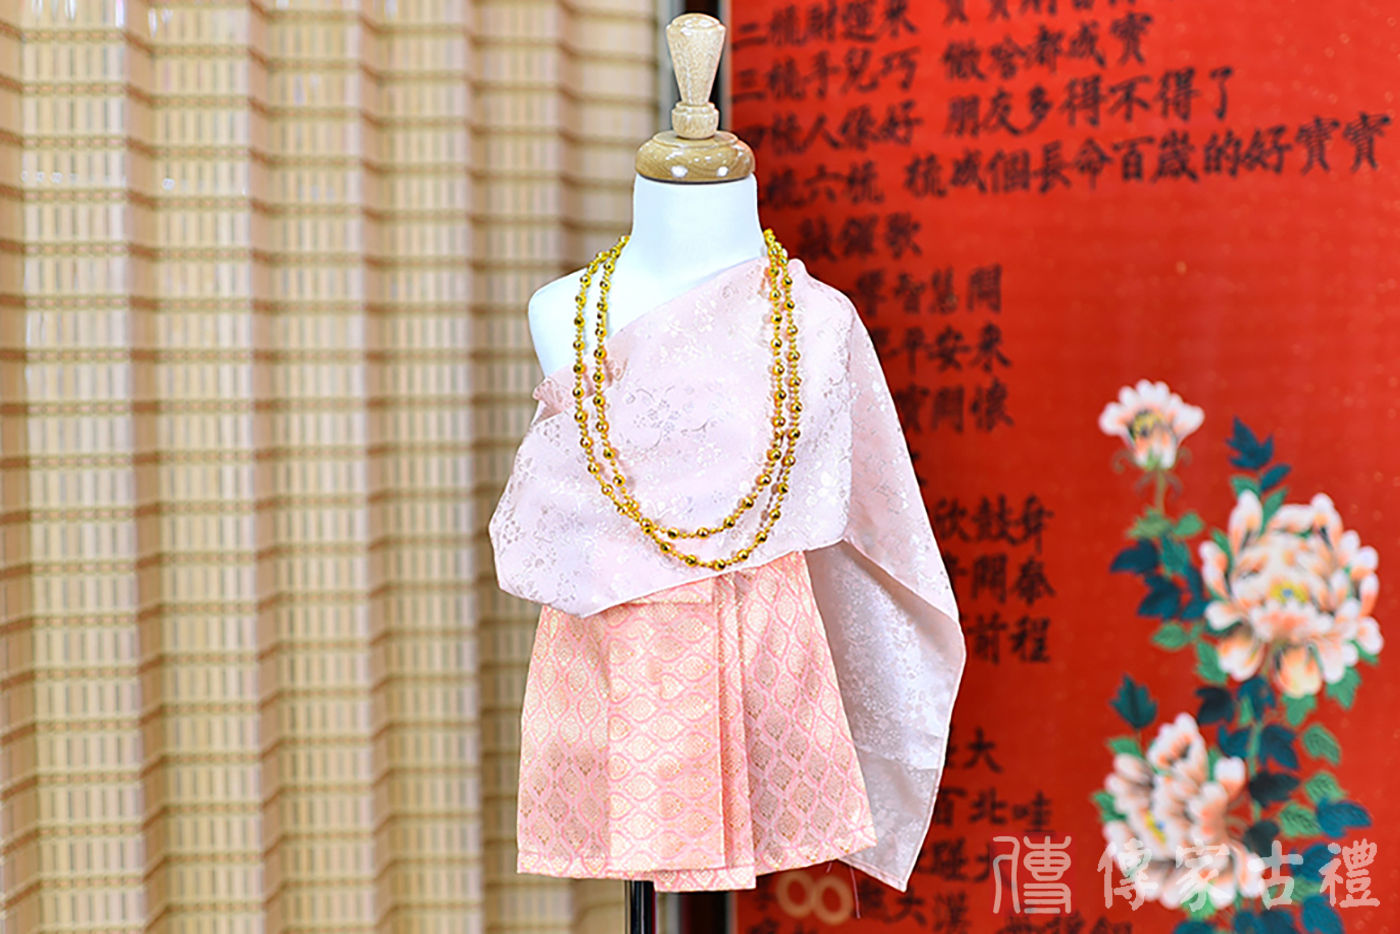 2024-02-22小孩皇室泰服古裝禮服。粉色的紋路披肩搭配橘色短裙的泰式古裝禮服。照片集